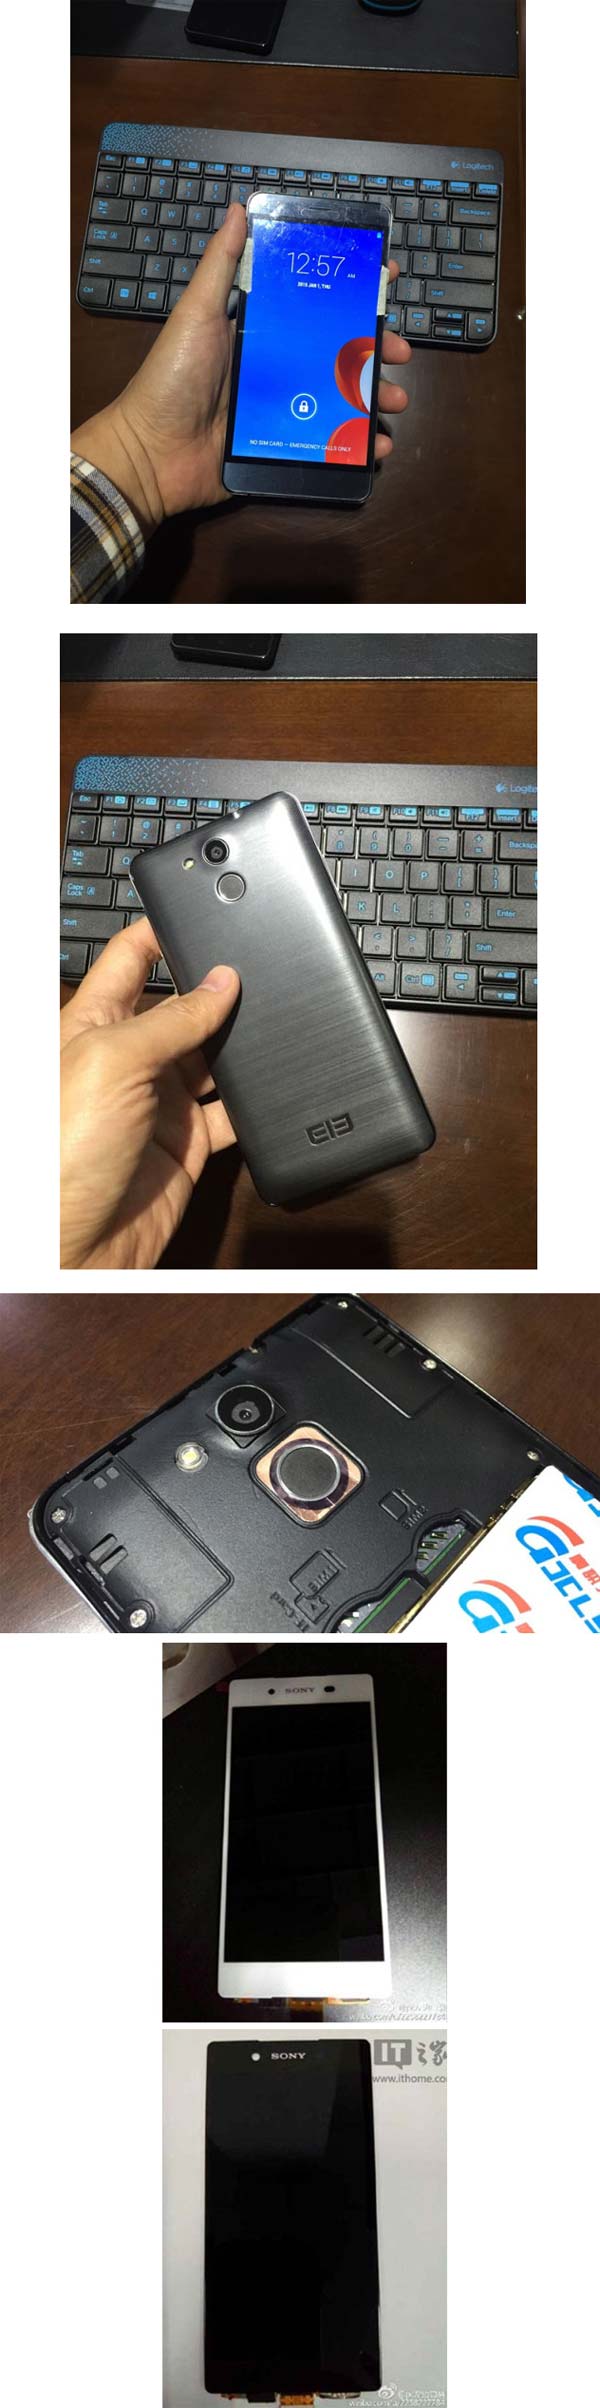 На фото показаны аппараты Elephone P7000 и Sony Xperia Z4